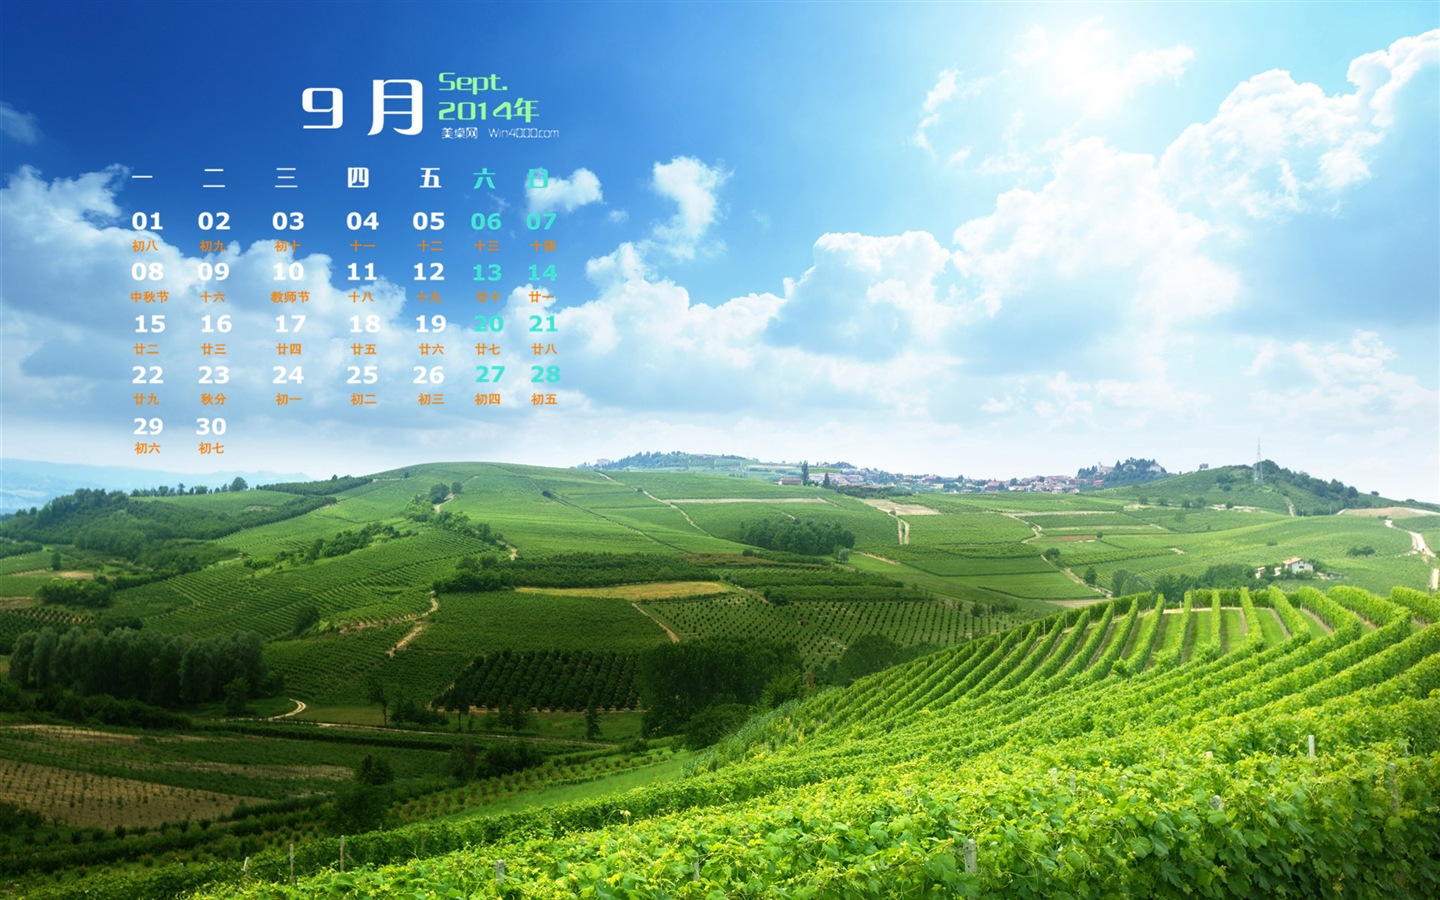 09 2014 wallpaper Calendario (2) #8 - 1440x900